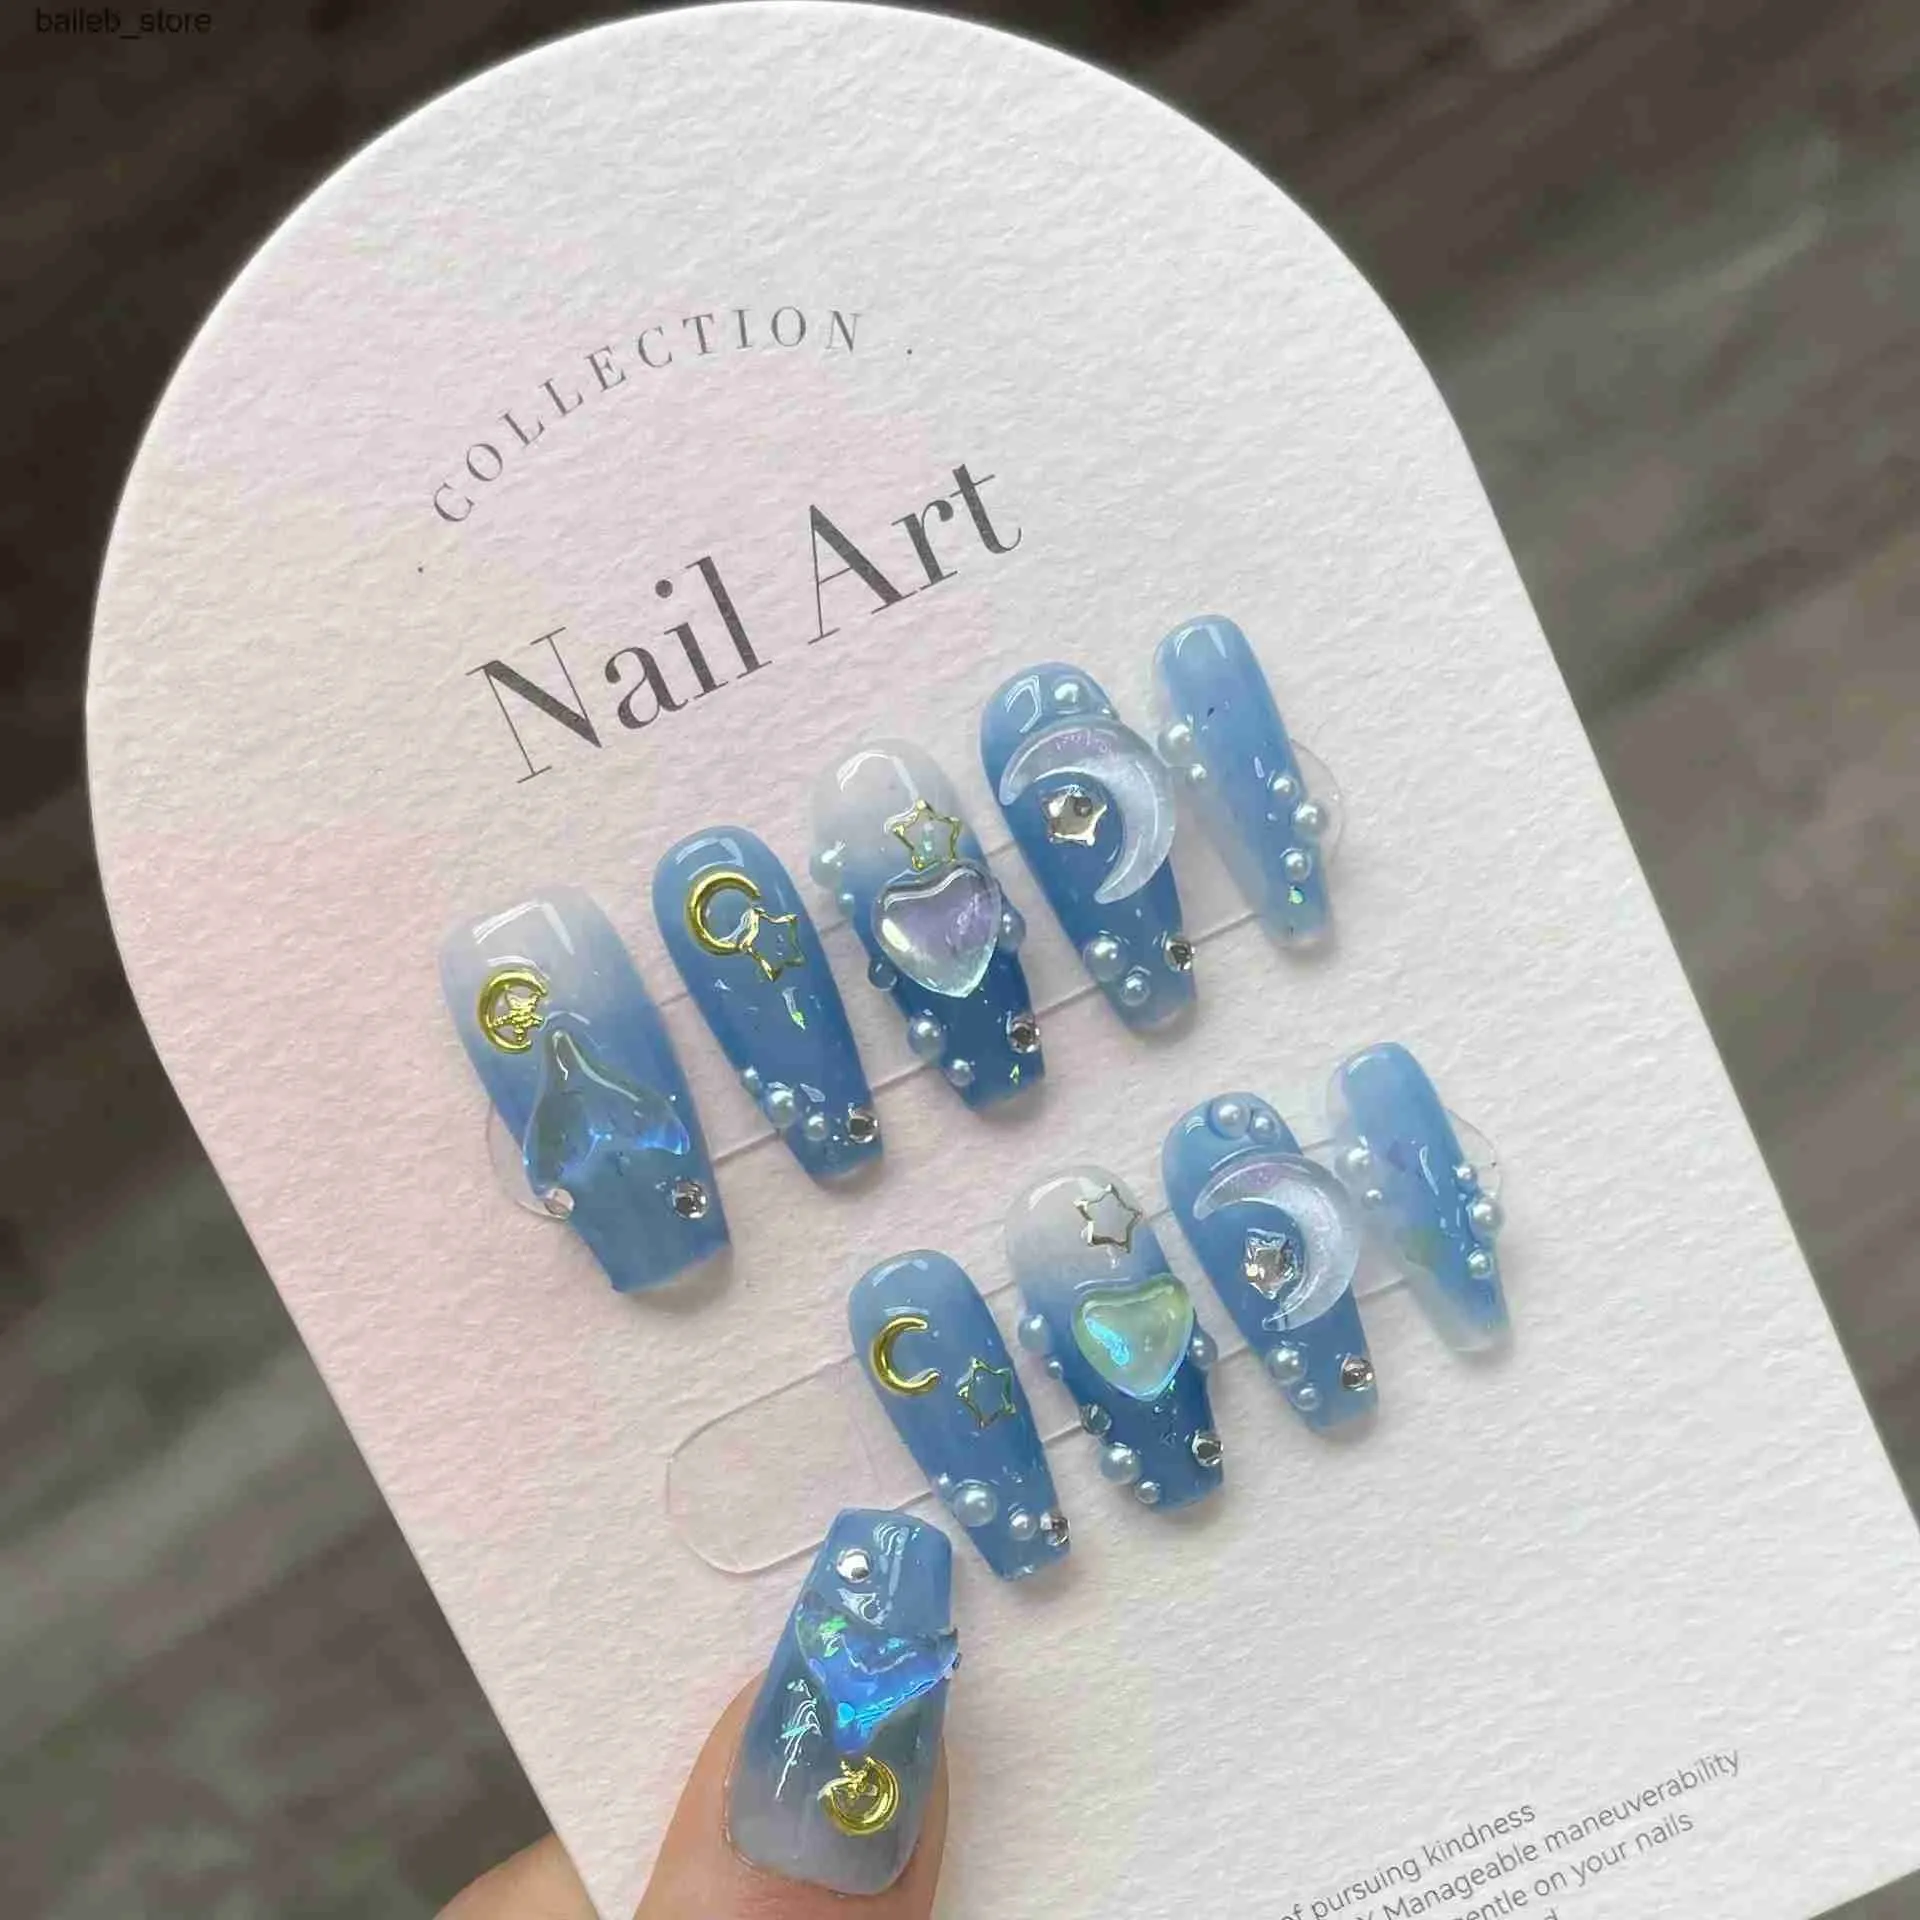 False Nails 10Pcs Handmade Press on Nails Long Ballet Blue Fake Nails with 3D Ocean Moon Rhinestone Design False Nails Full Cover Nail Tips Y240419 Y240419